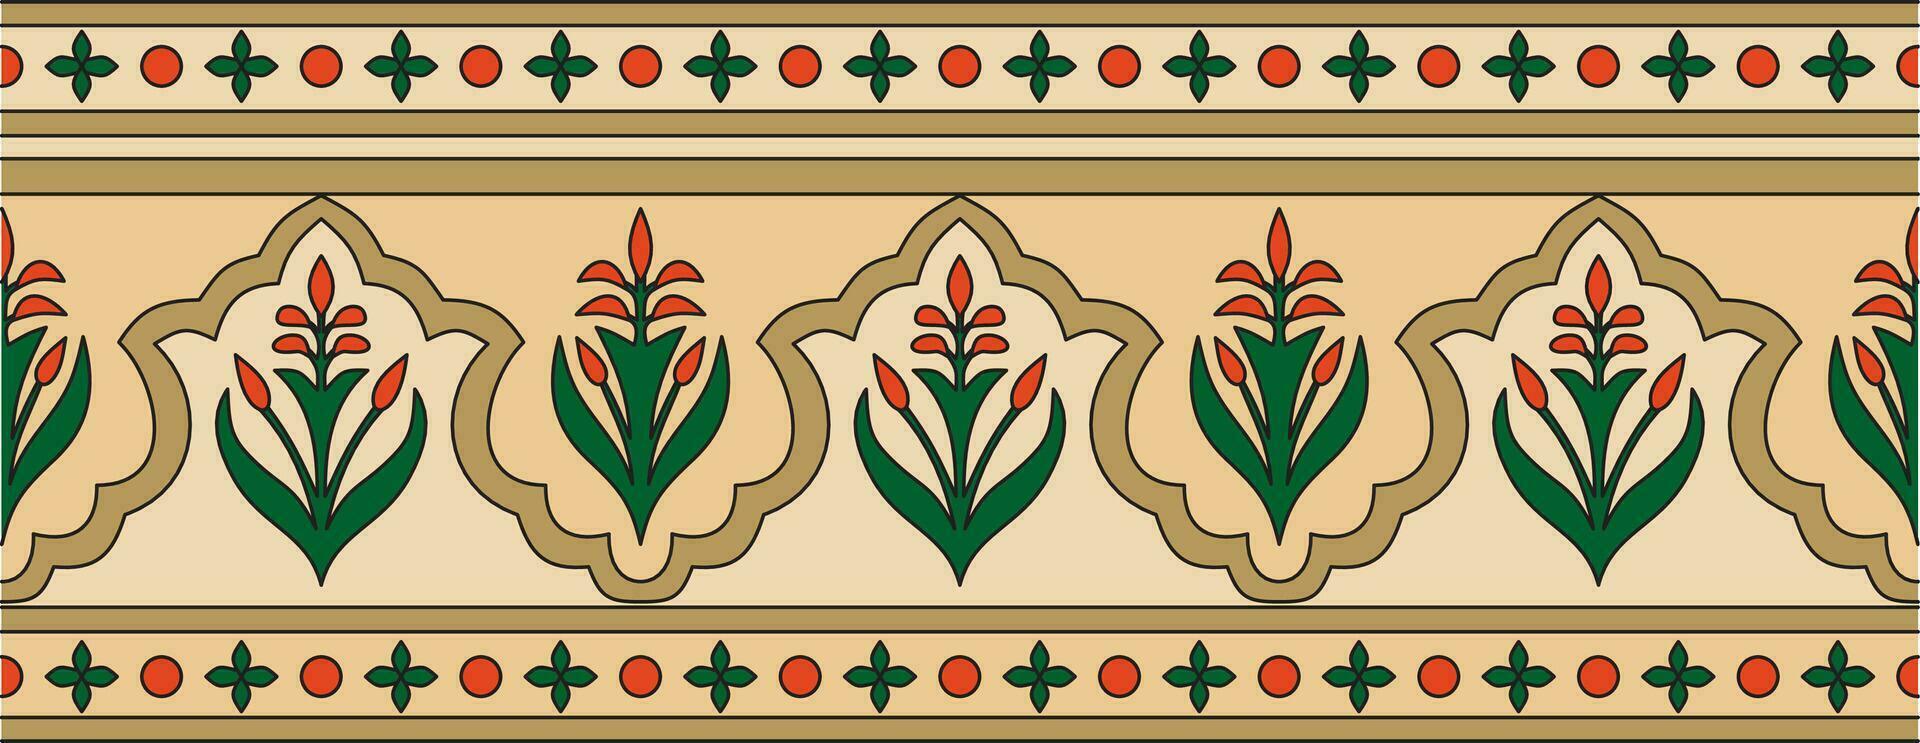 Vektor nahtlos National farbig Ornament von uralt Persien. iranisch ethnisch endlos Grenze, rahmen.